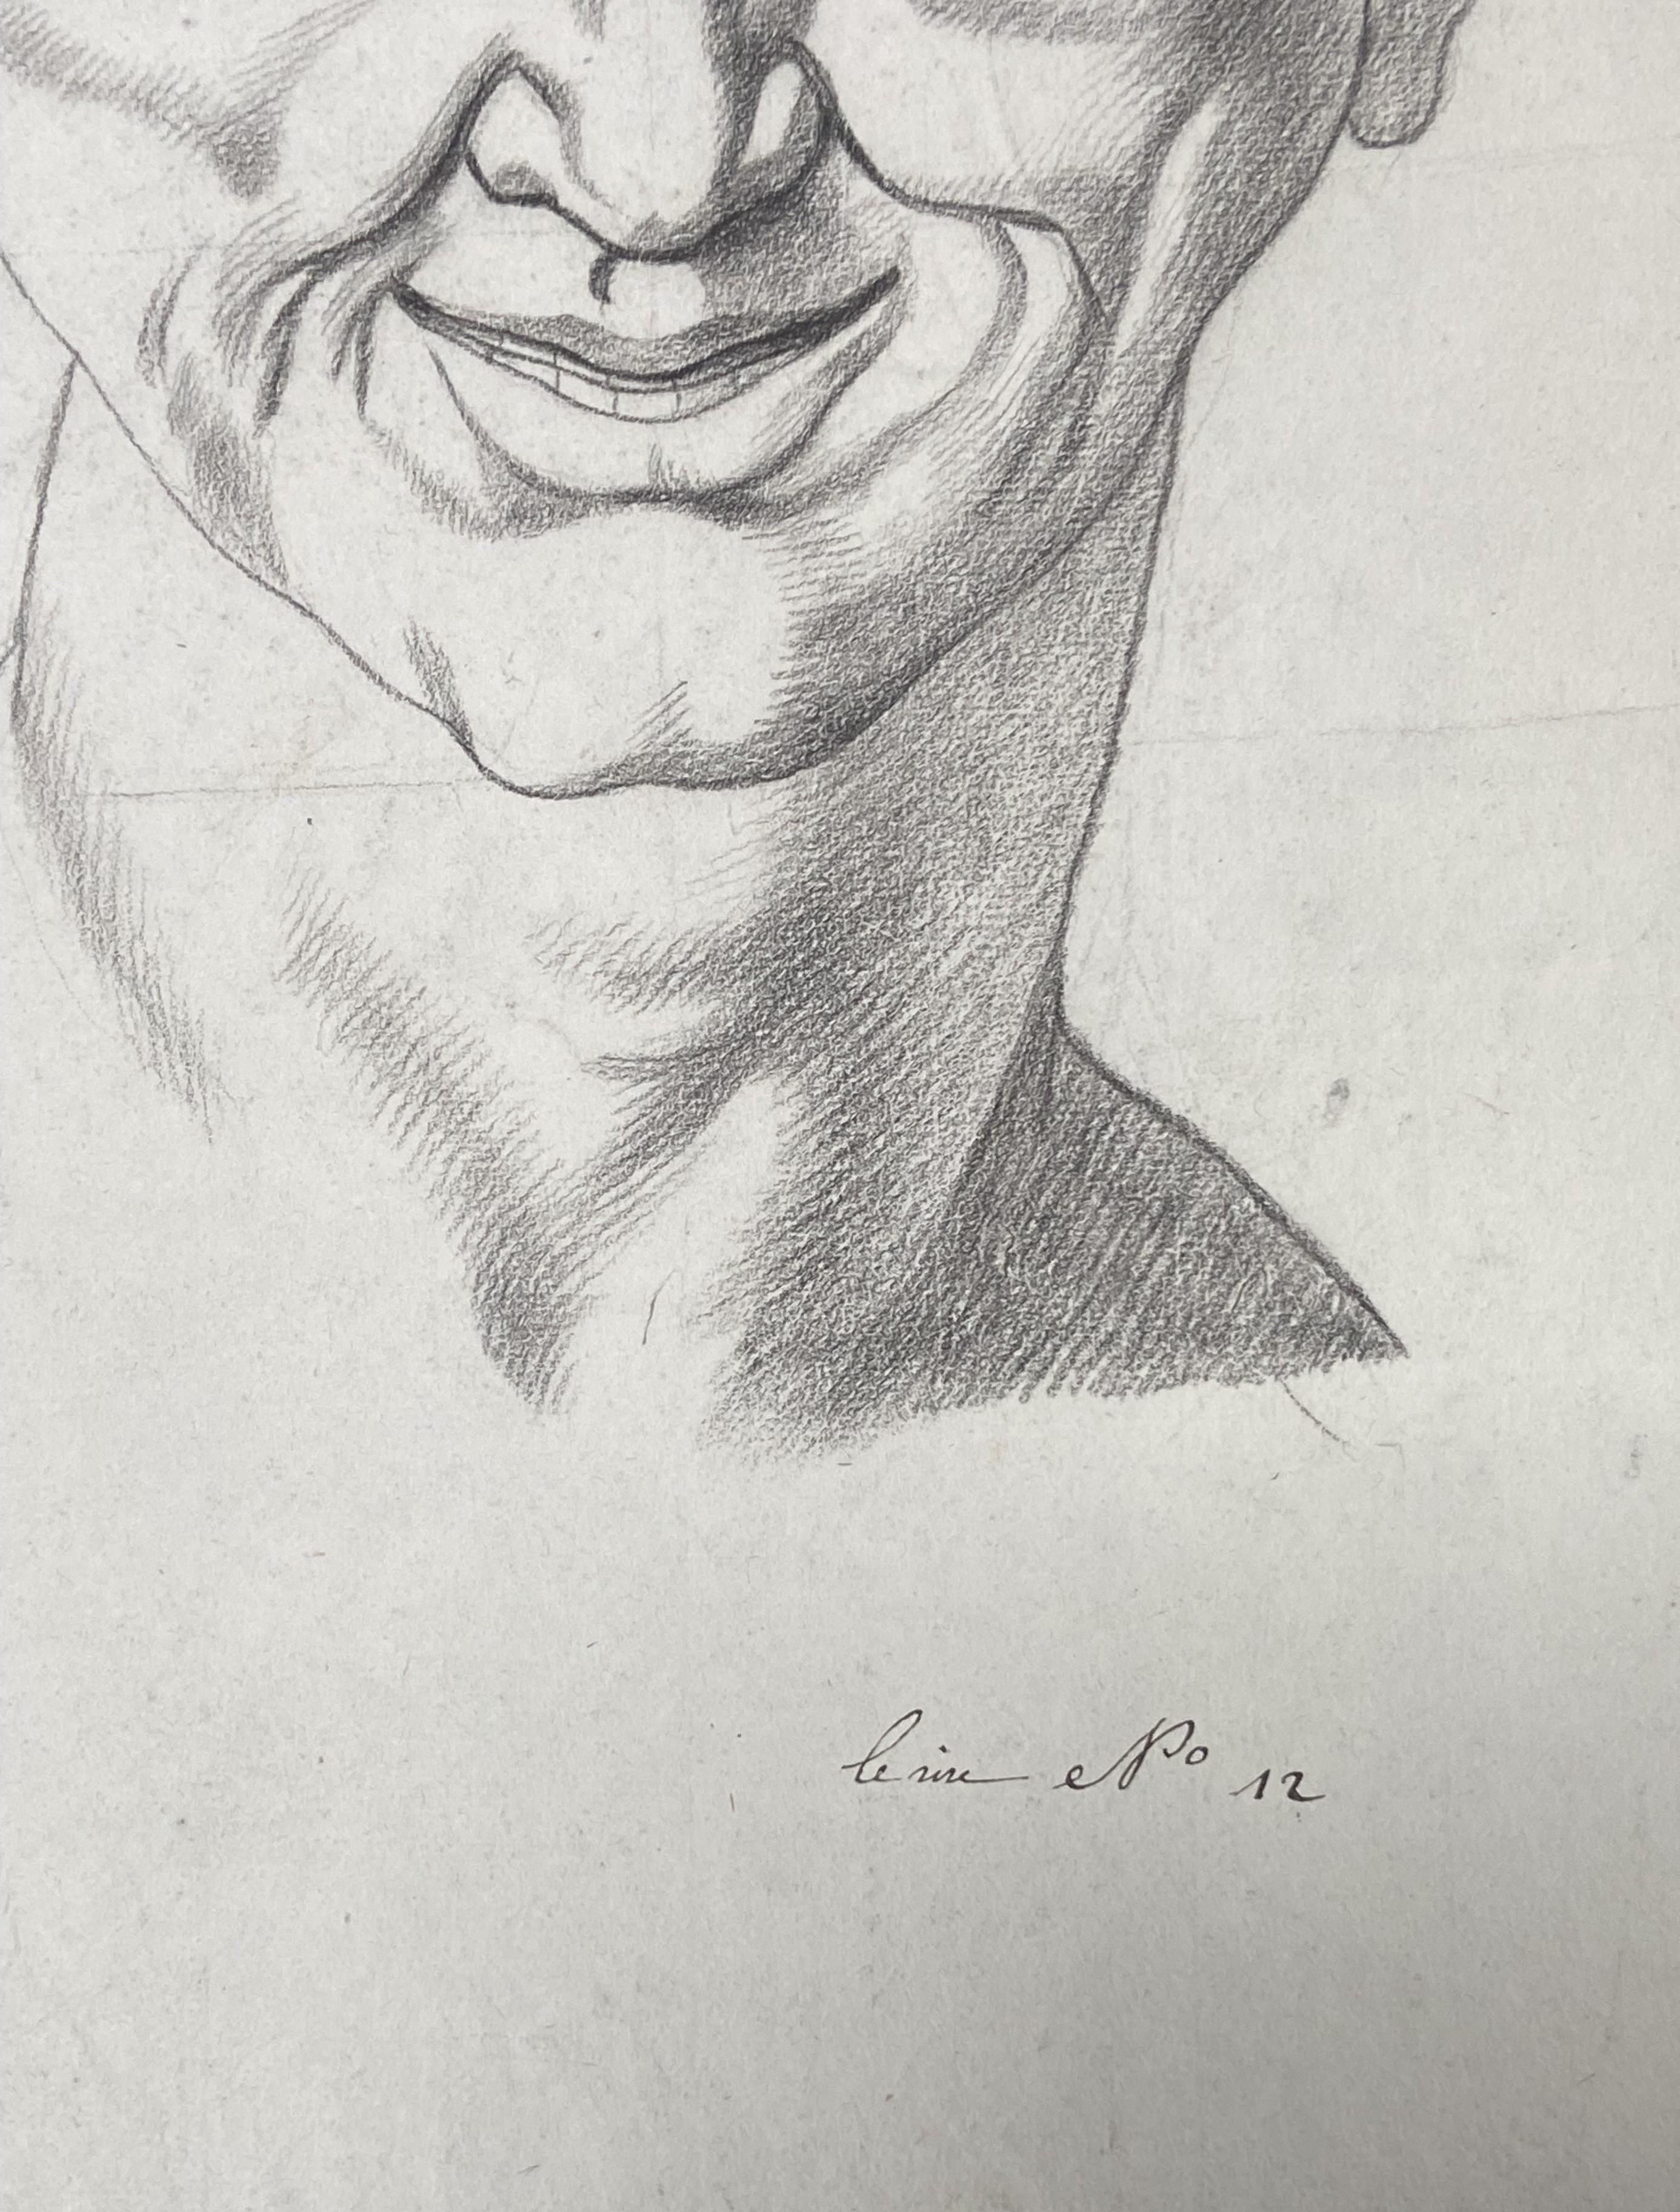 Französische Schule des 18. Jahrhunderts, Le Rire, Laughter als Ausdrucksform, Zeichnung (Grau), Portrait, von Unknown